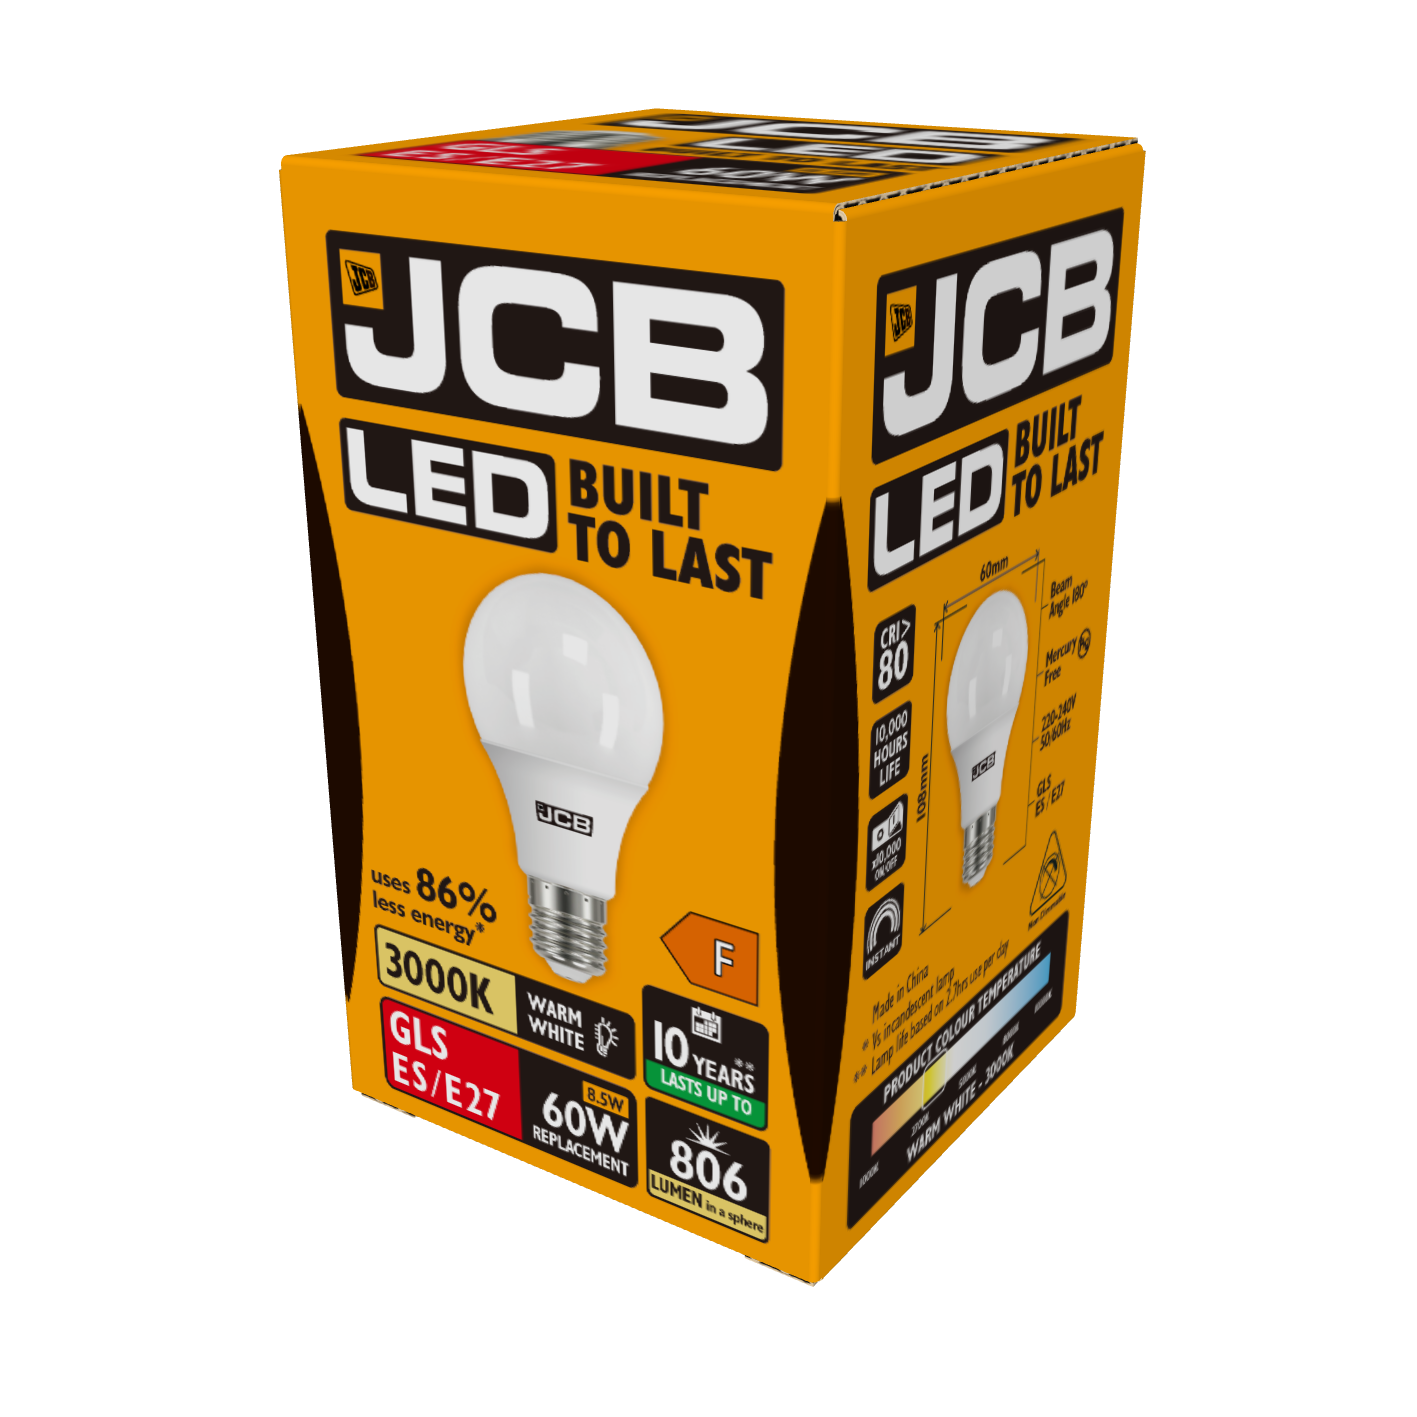 JCB LED GLS E27 (ES) 806lm 8.5W 3,000K (Warm White), Box of 1